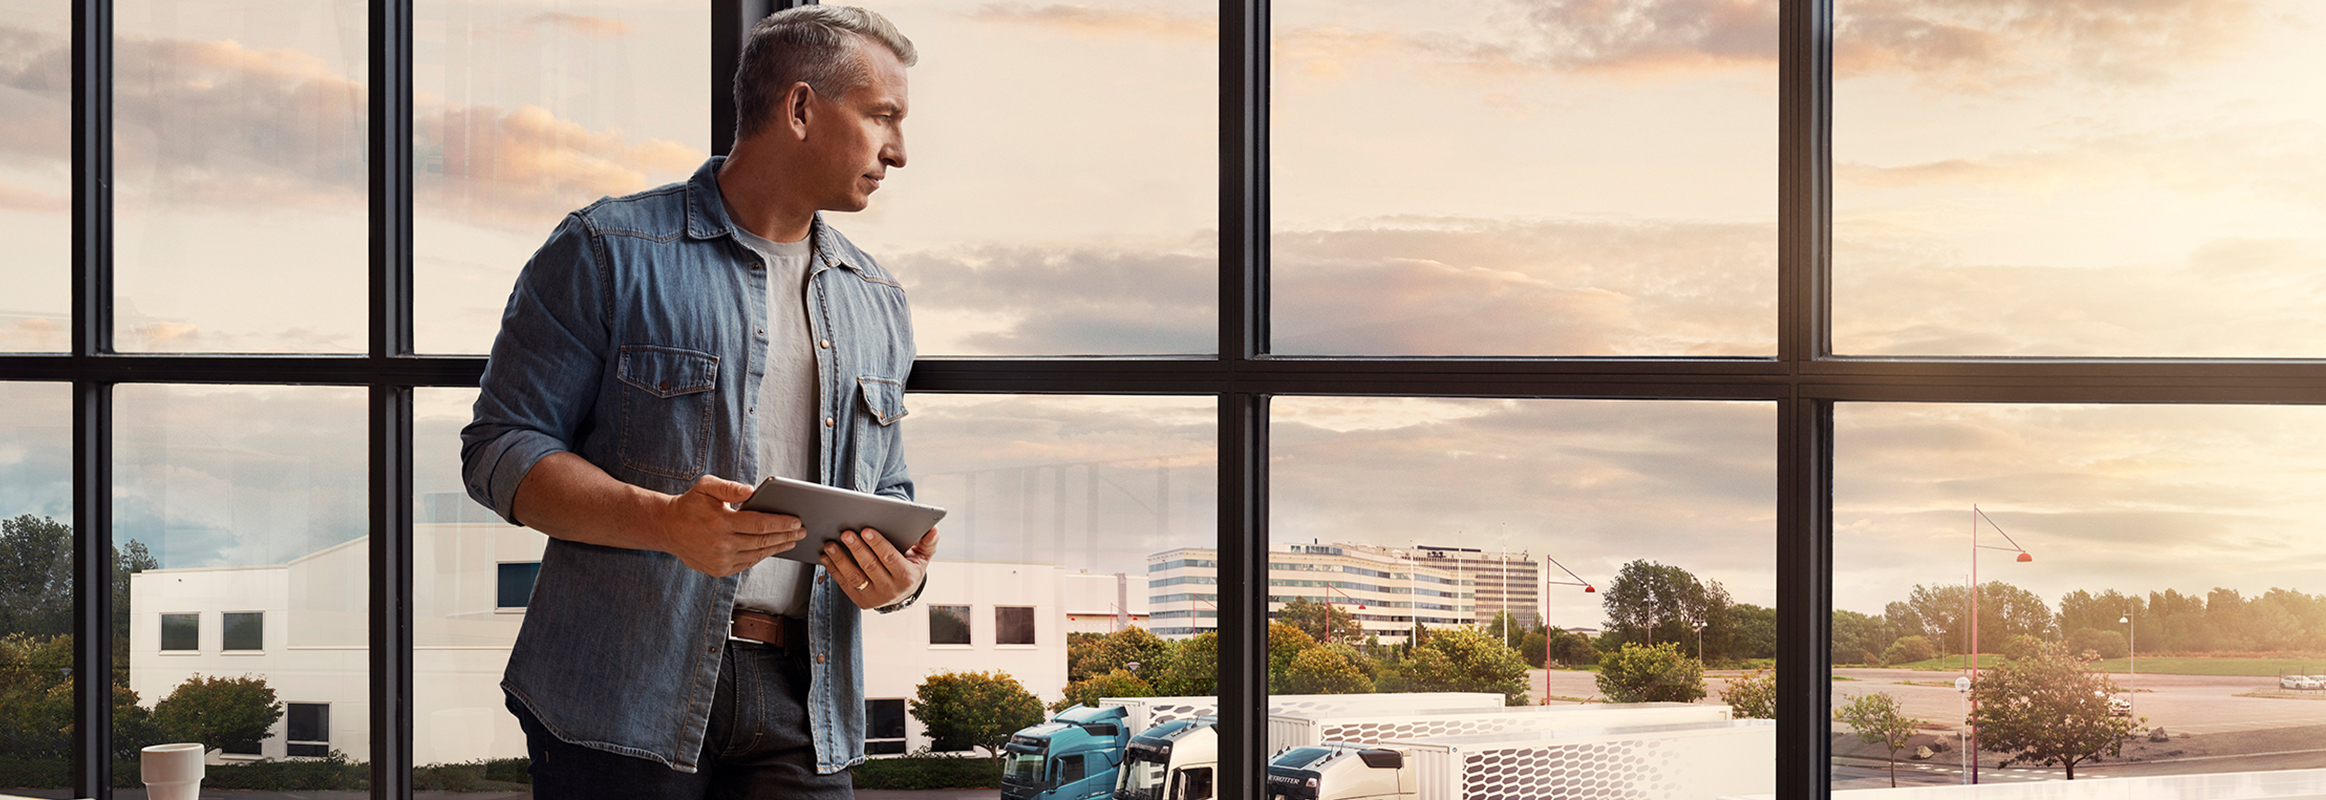 Мужчина с планшетом стоит у окна и смотрит на свой парк грузовых автомобилей